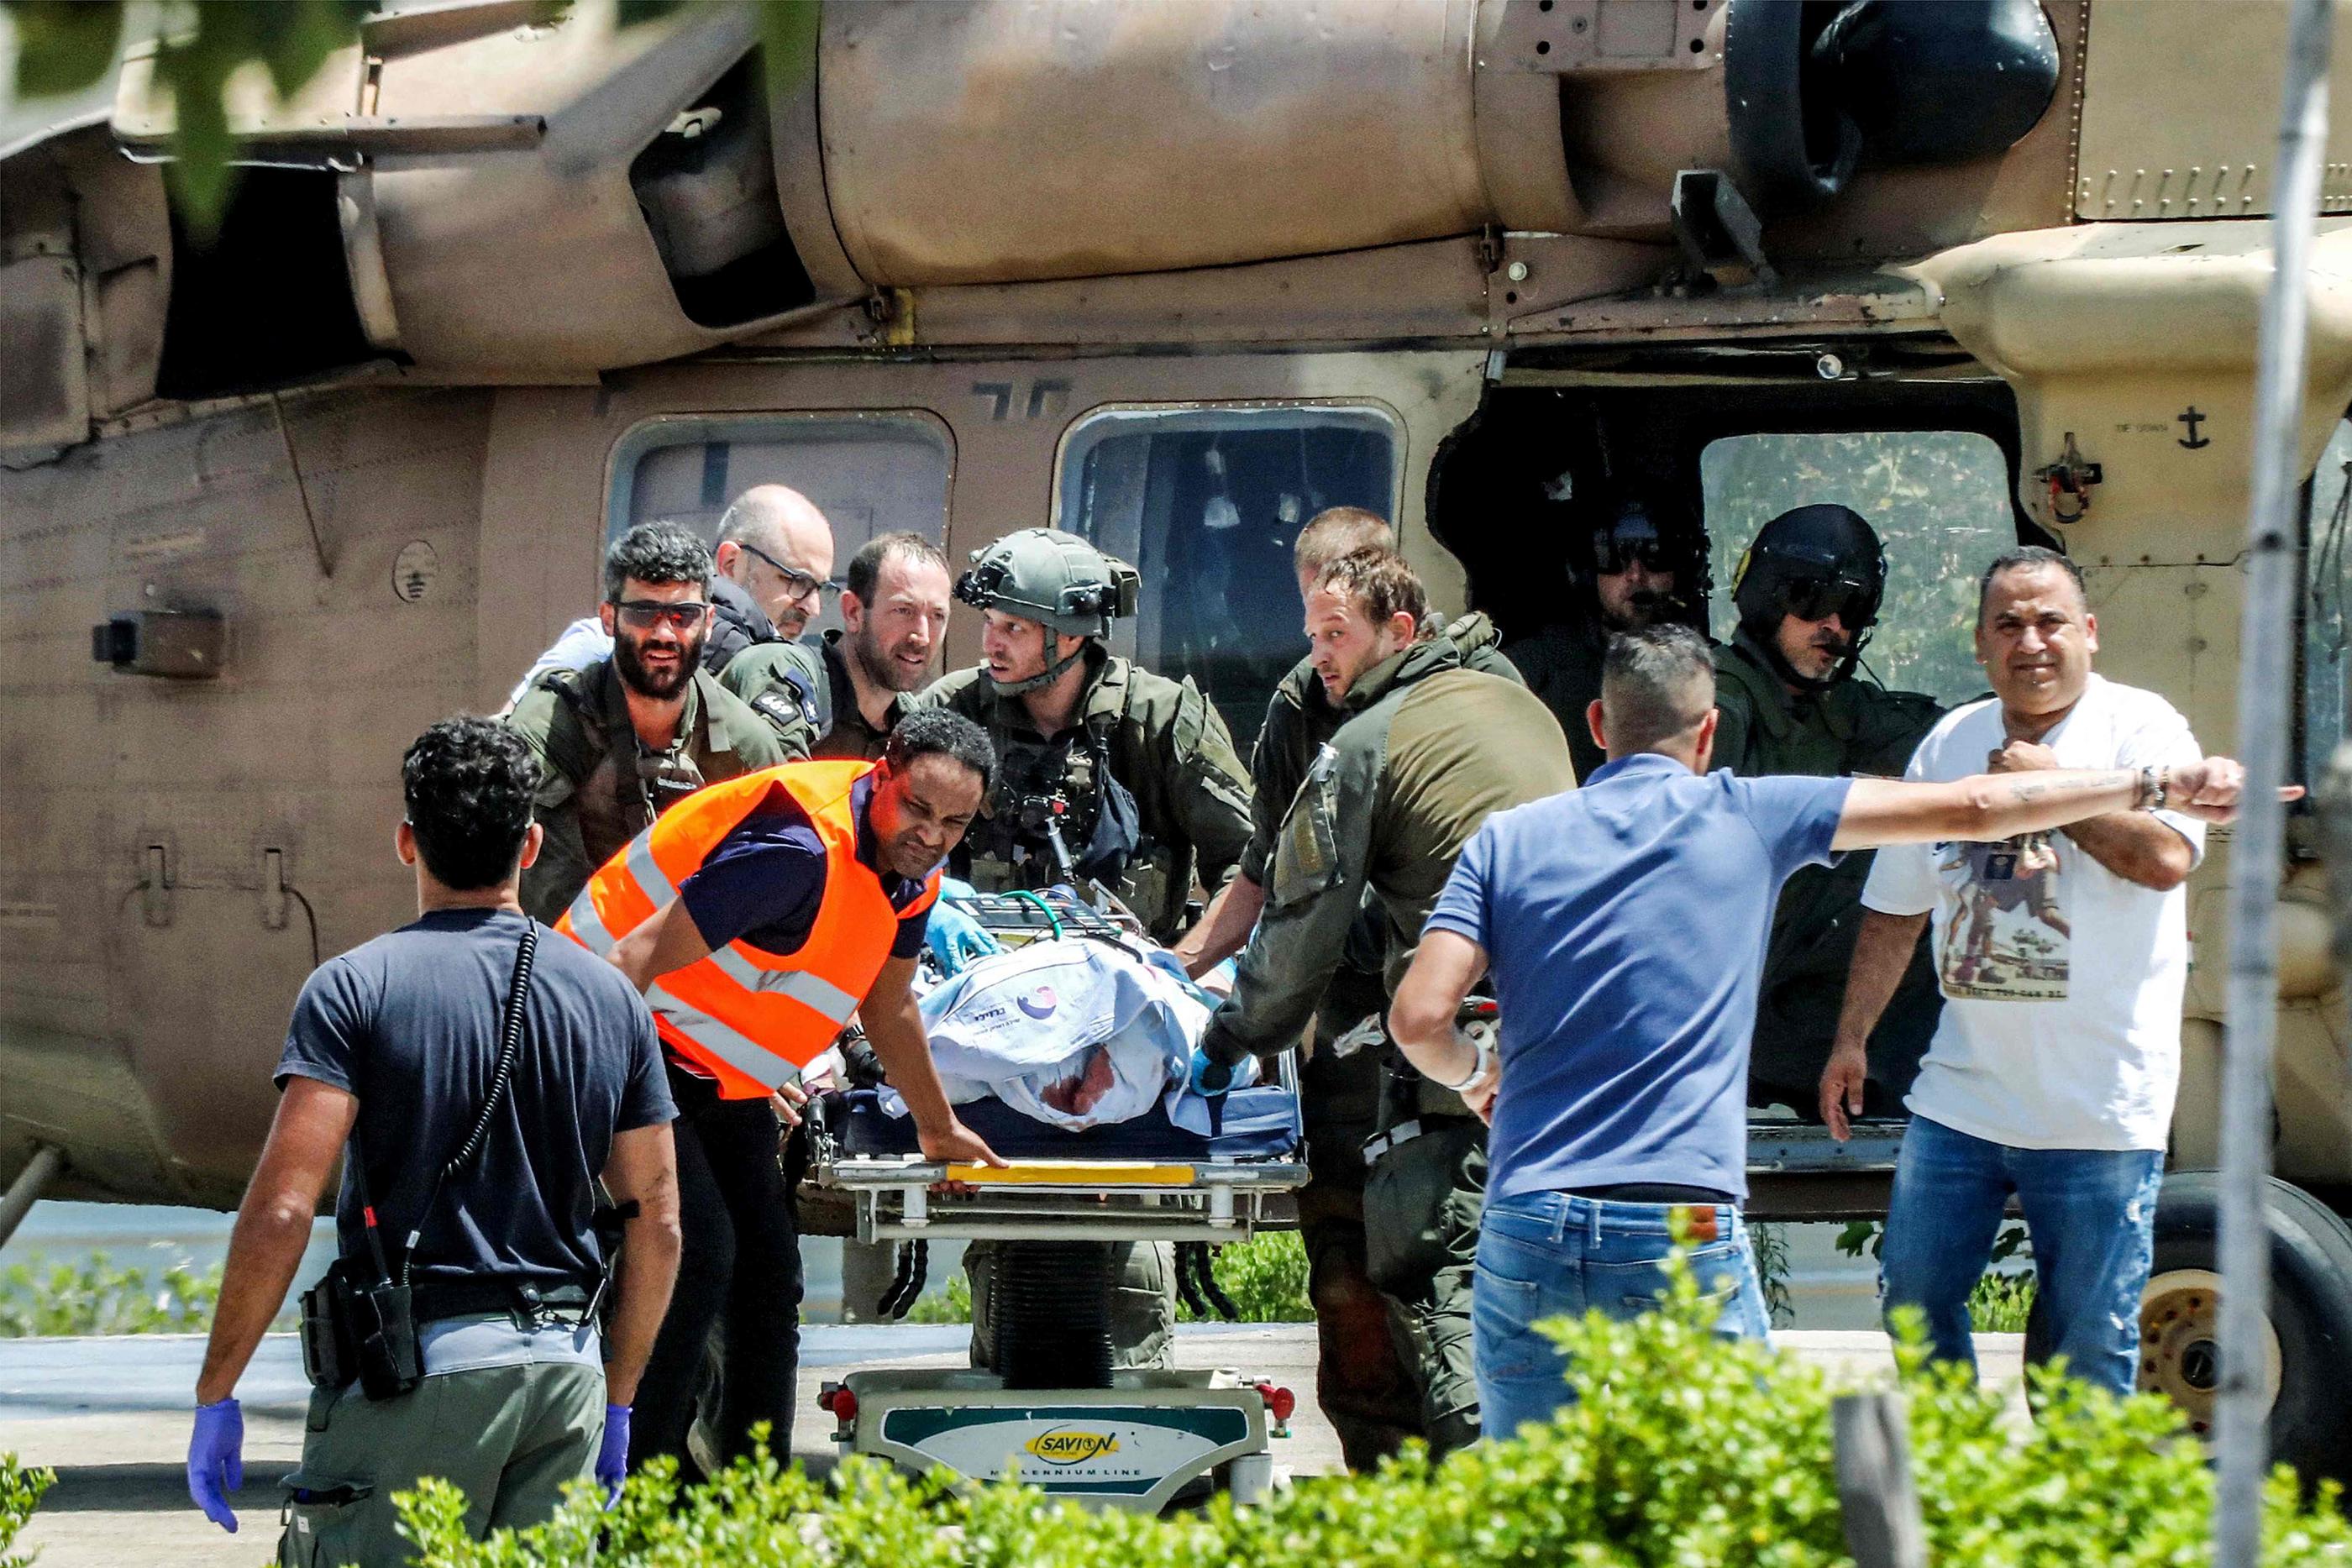 Les quatre otages libérés ont été transférés au centre médical Sheba de Tel Hashomer, près de Tel-Aviv, pour procéder à des examens médicaux. AFP / GIDEON MARKOWICZ